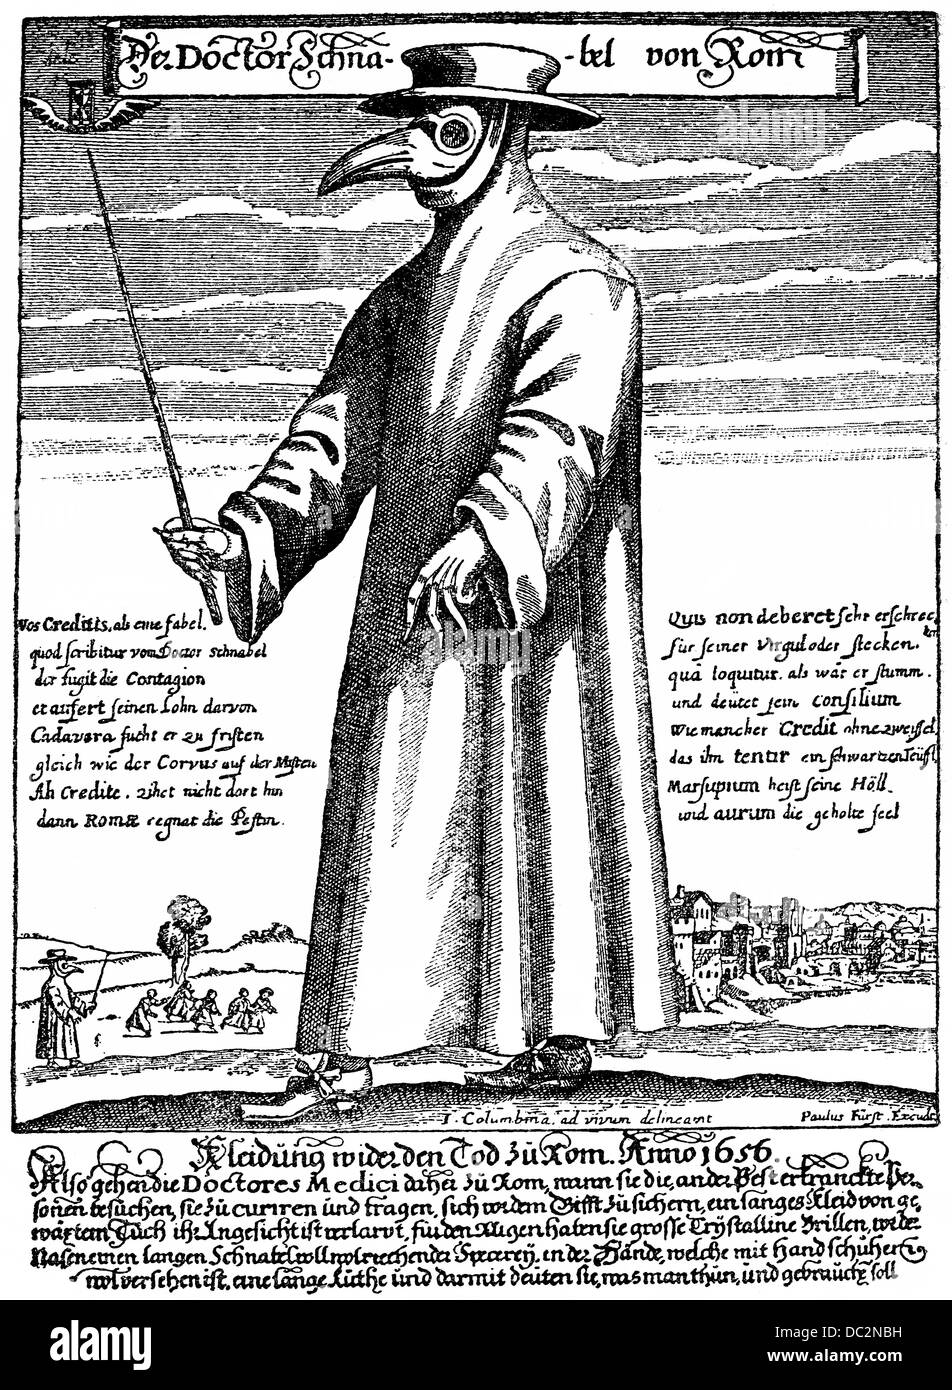 Docteur, docteur Schnabel la peste de Rome, 1656, médecin avec un masque de bec avec des herbes et de l'exécution d'un bâton pour se tenir loin des malades Banque D'Images